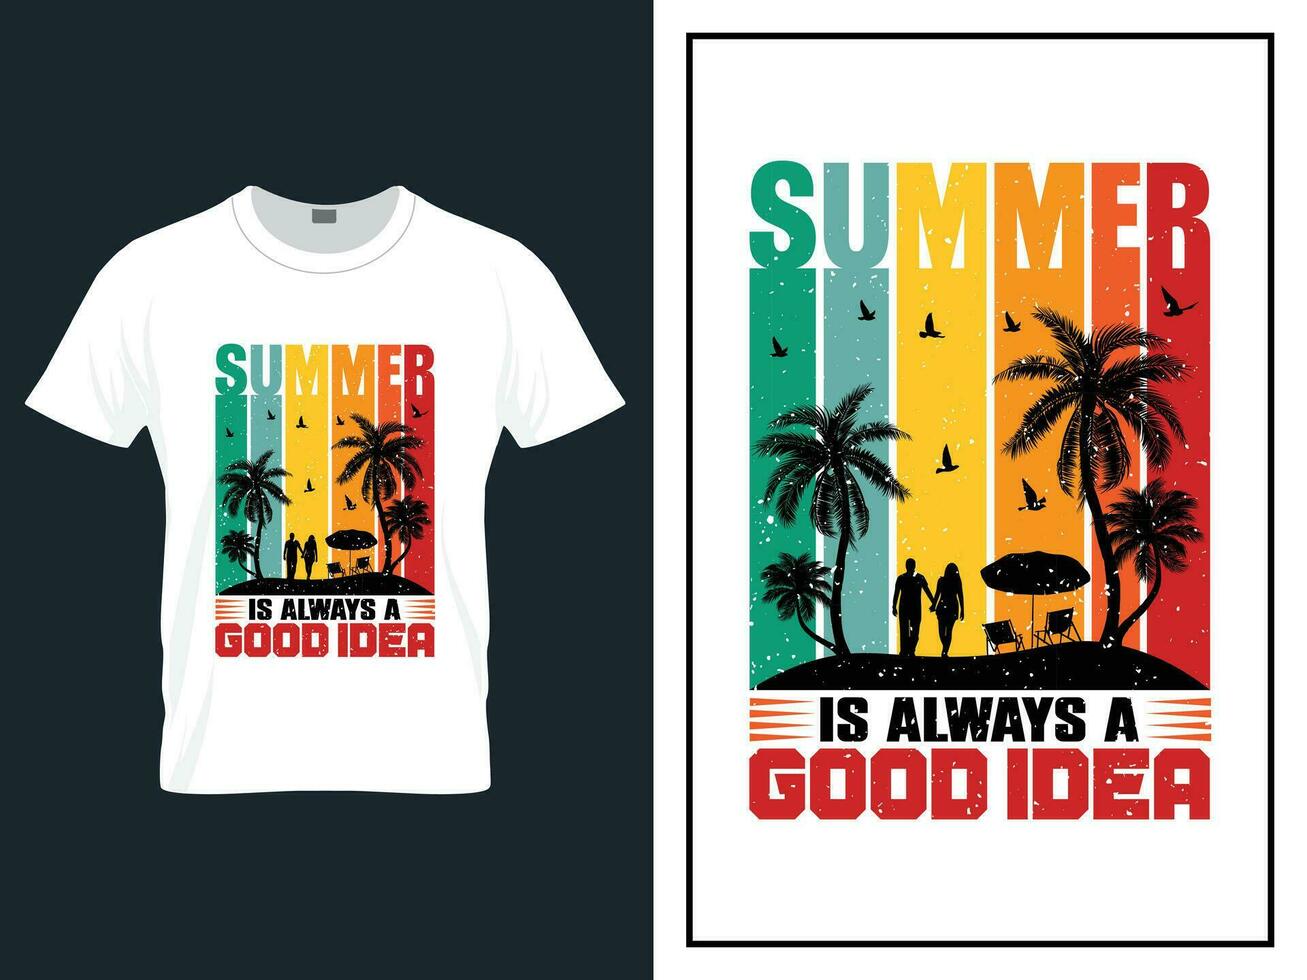 verão Tempo de praia camiseta Projeto vetor ilustração, vetor verão dia t camisa Projeto